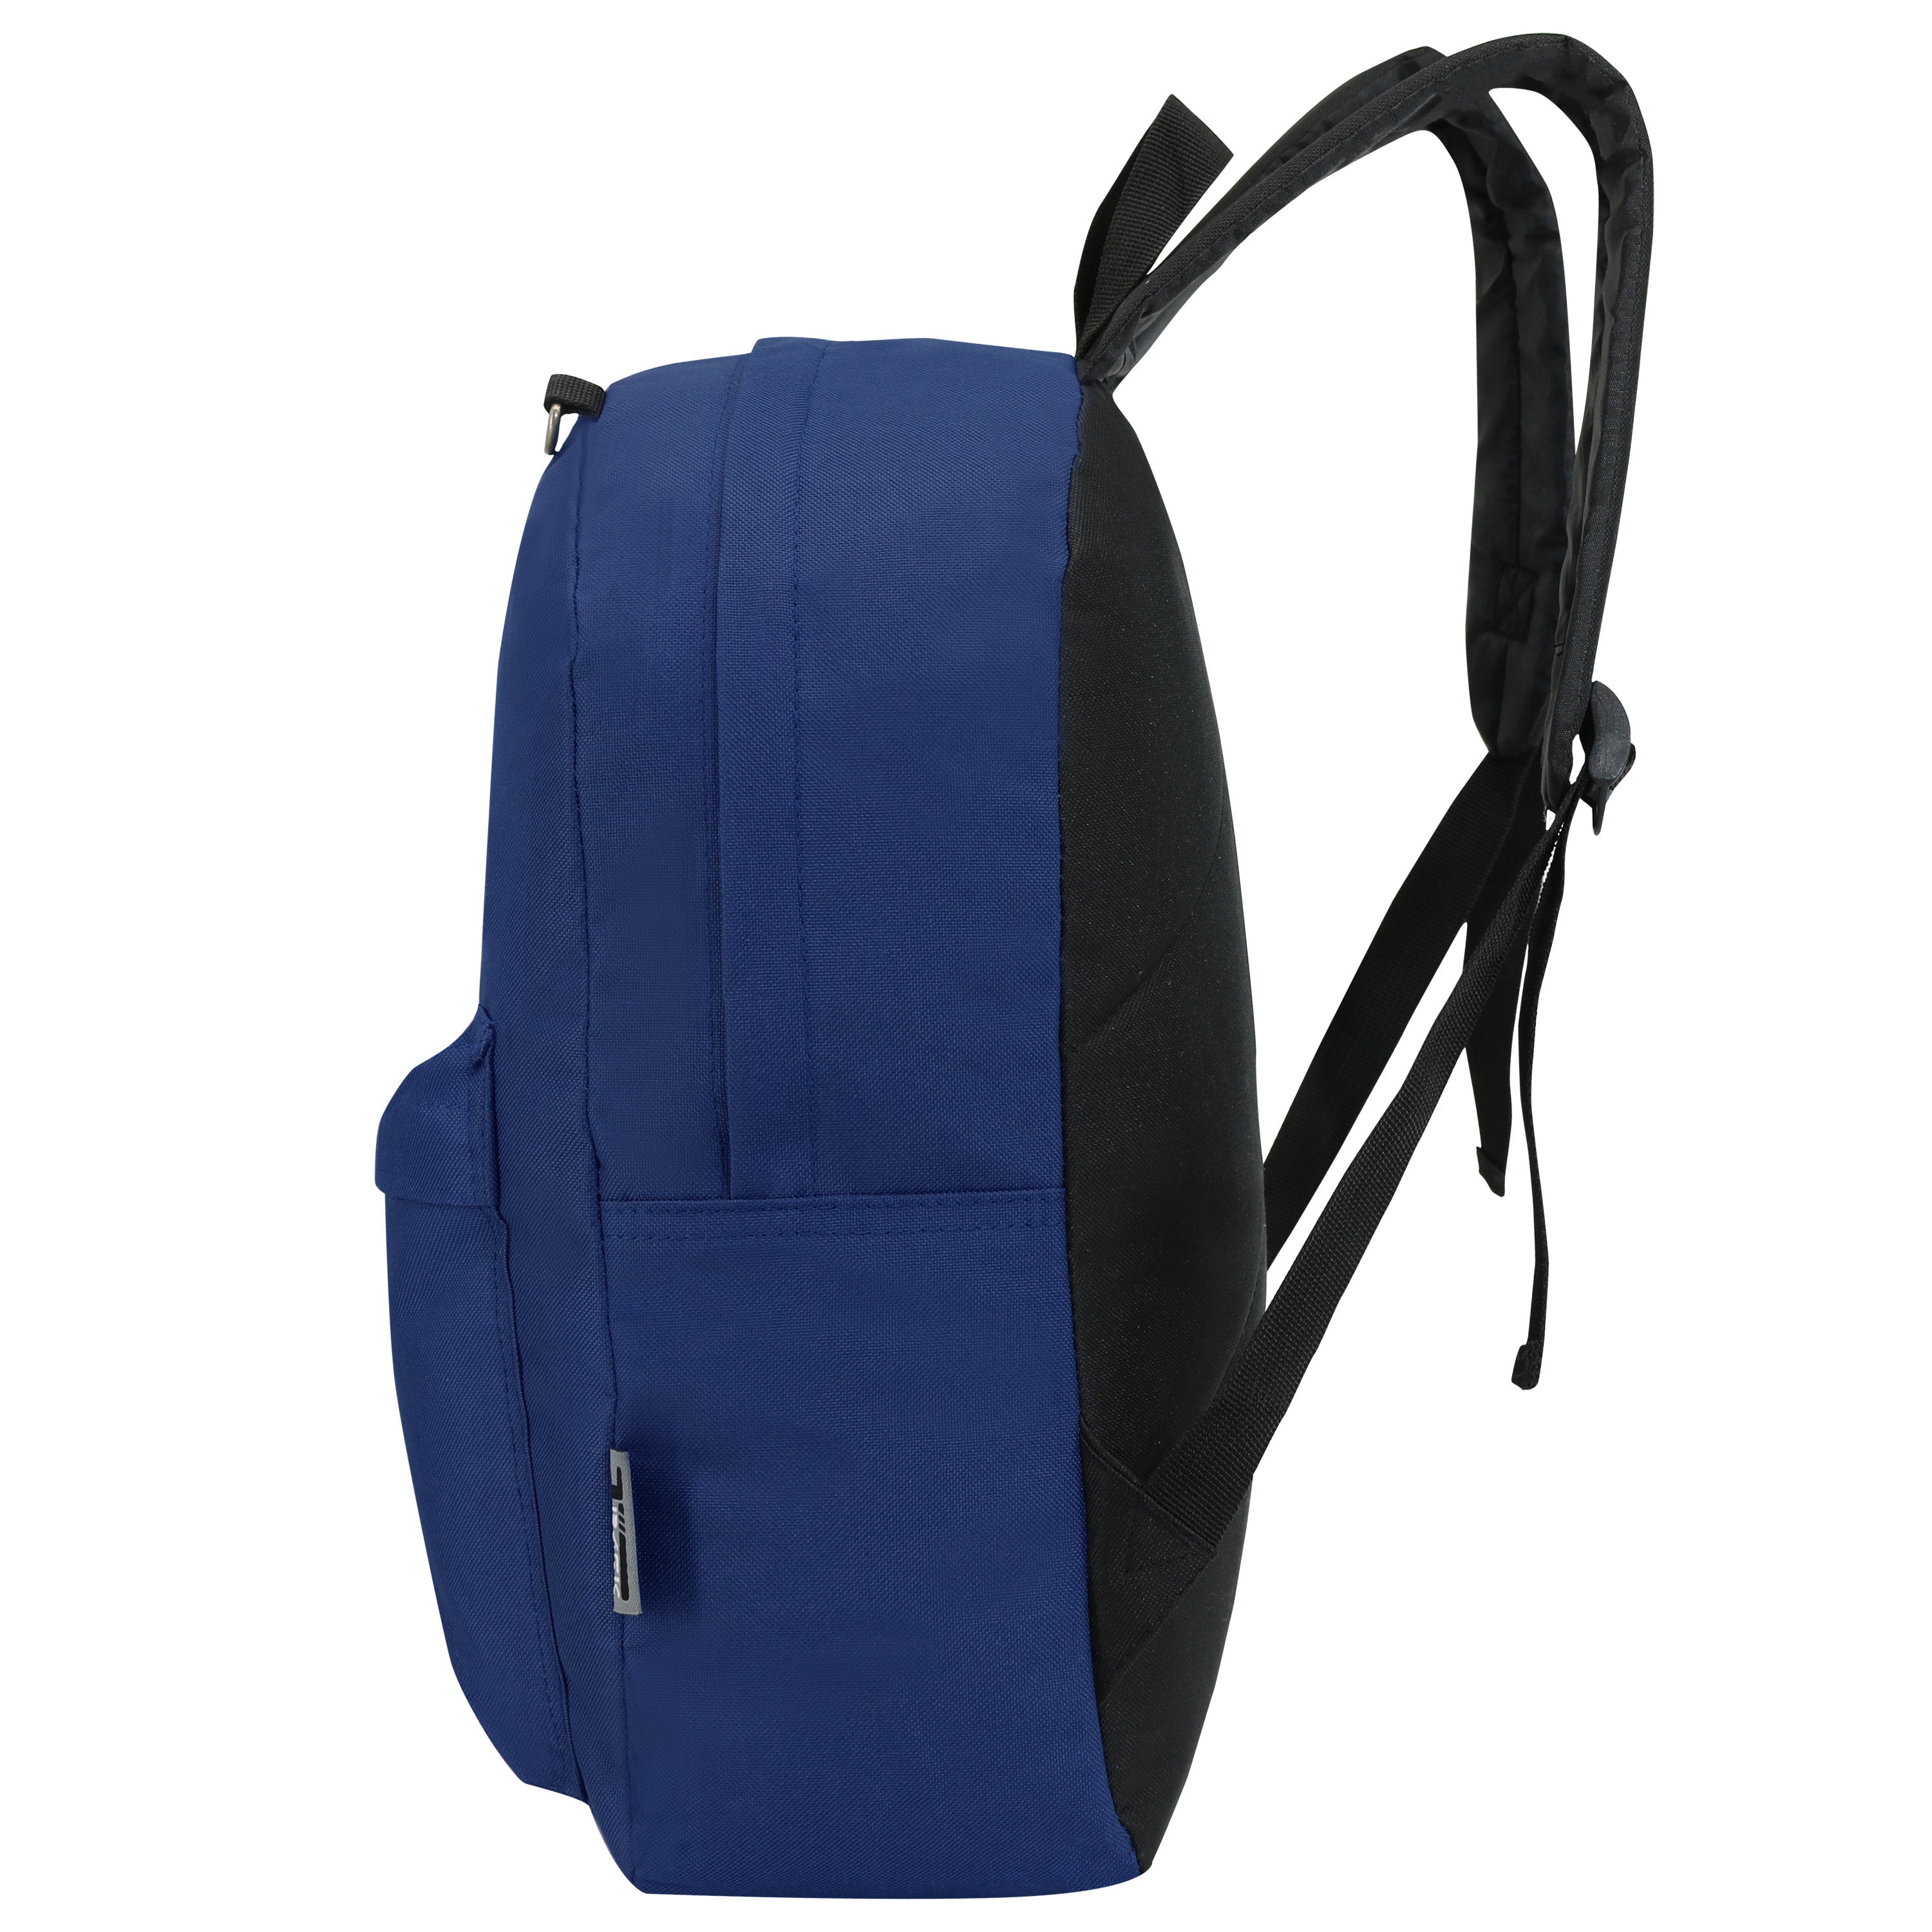 17" Kids Wholesale Backpacks In Navy - Wholesale Case of 24 Bookbags